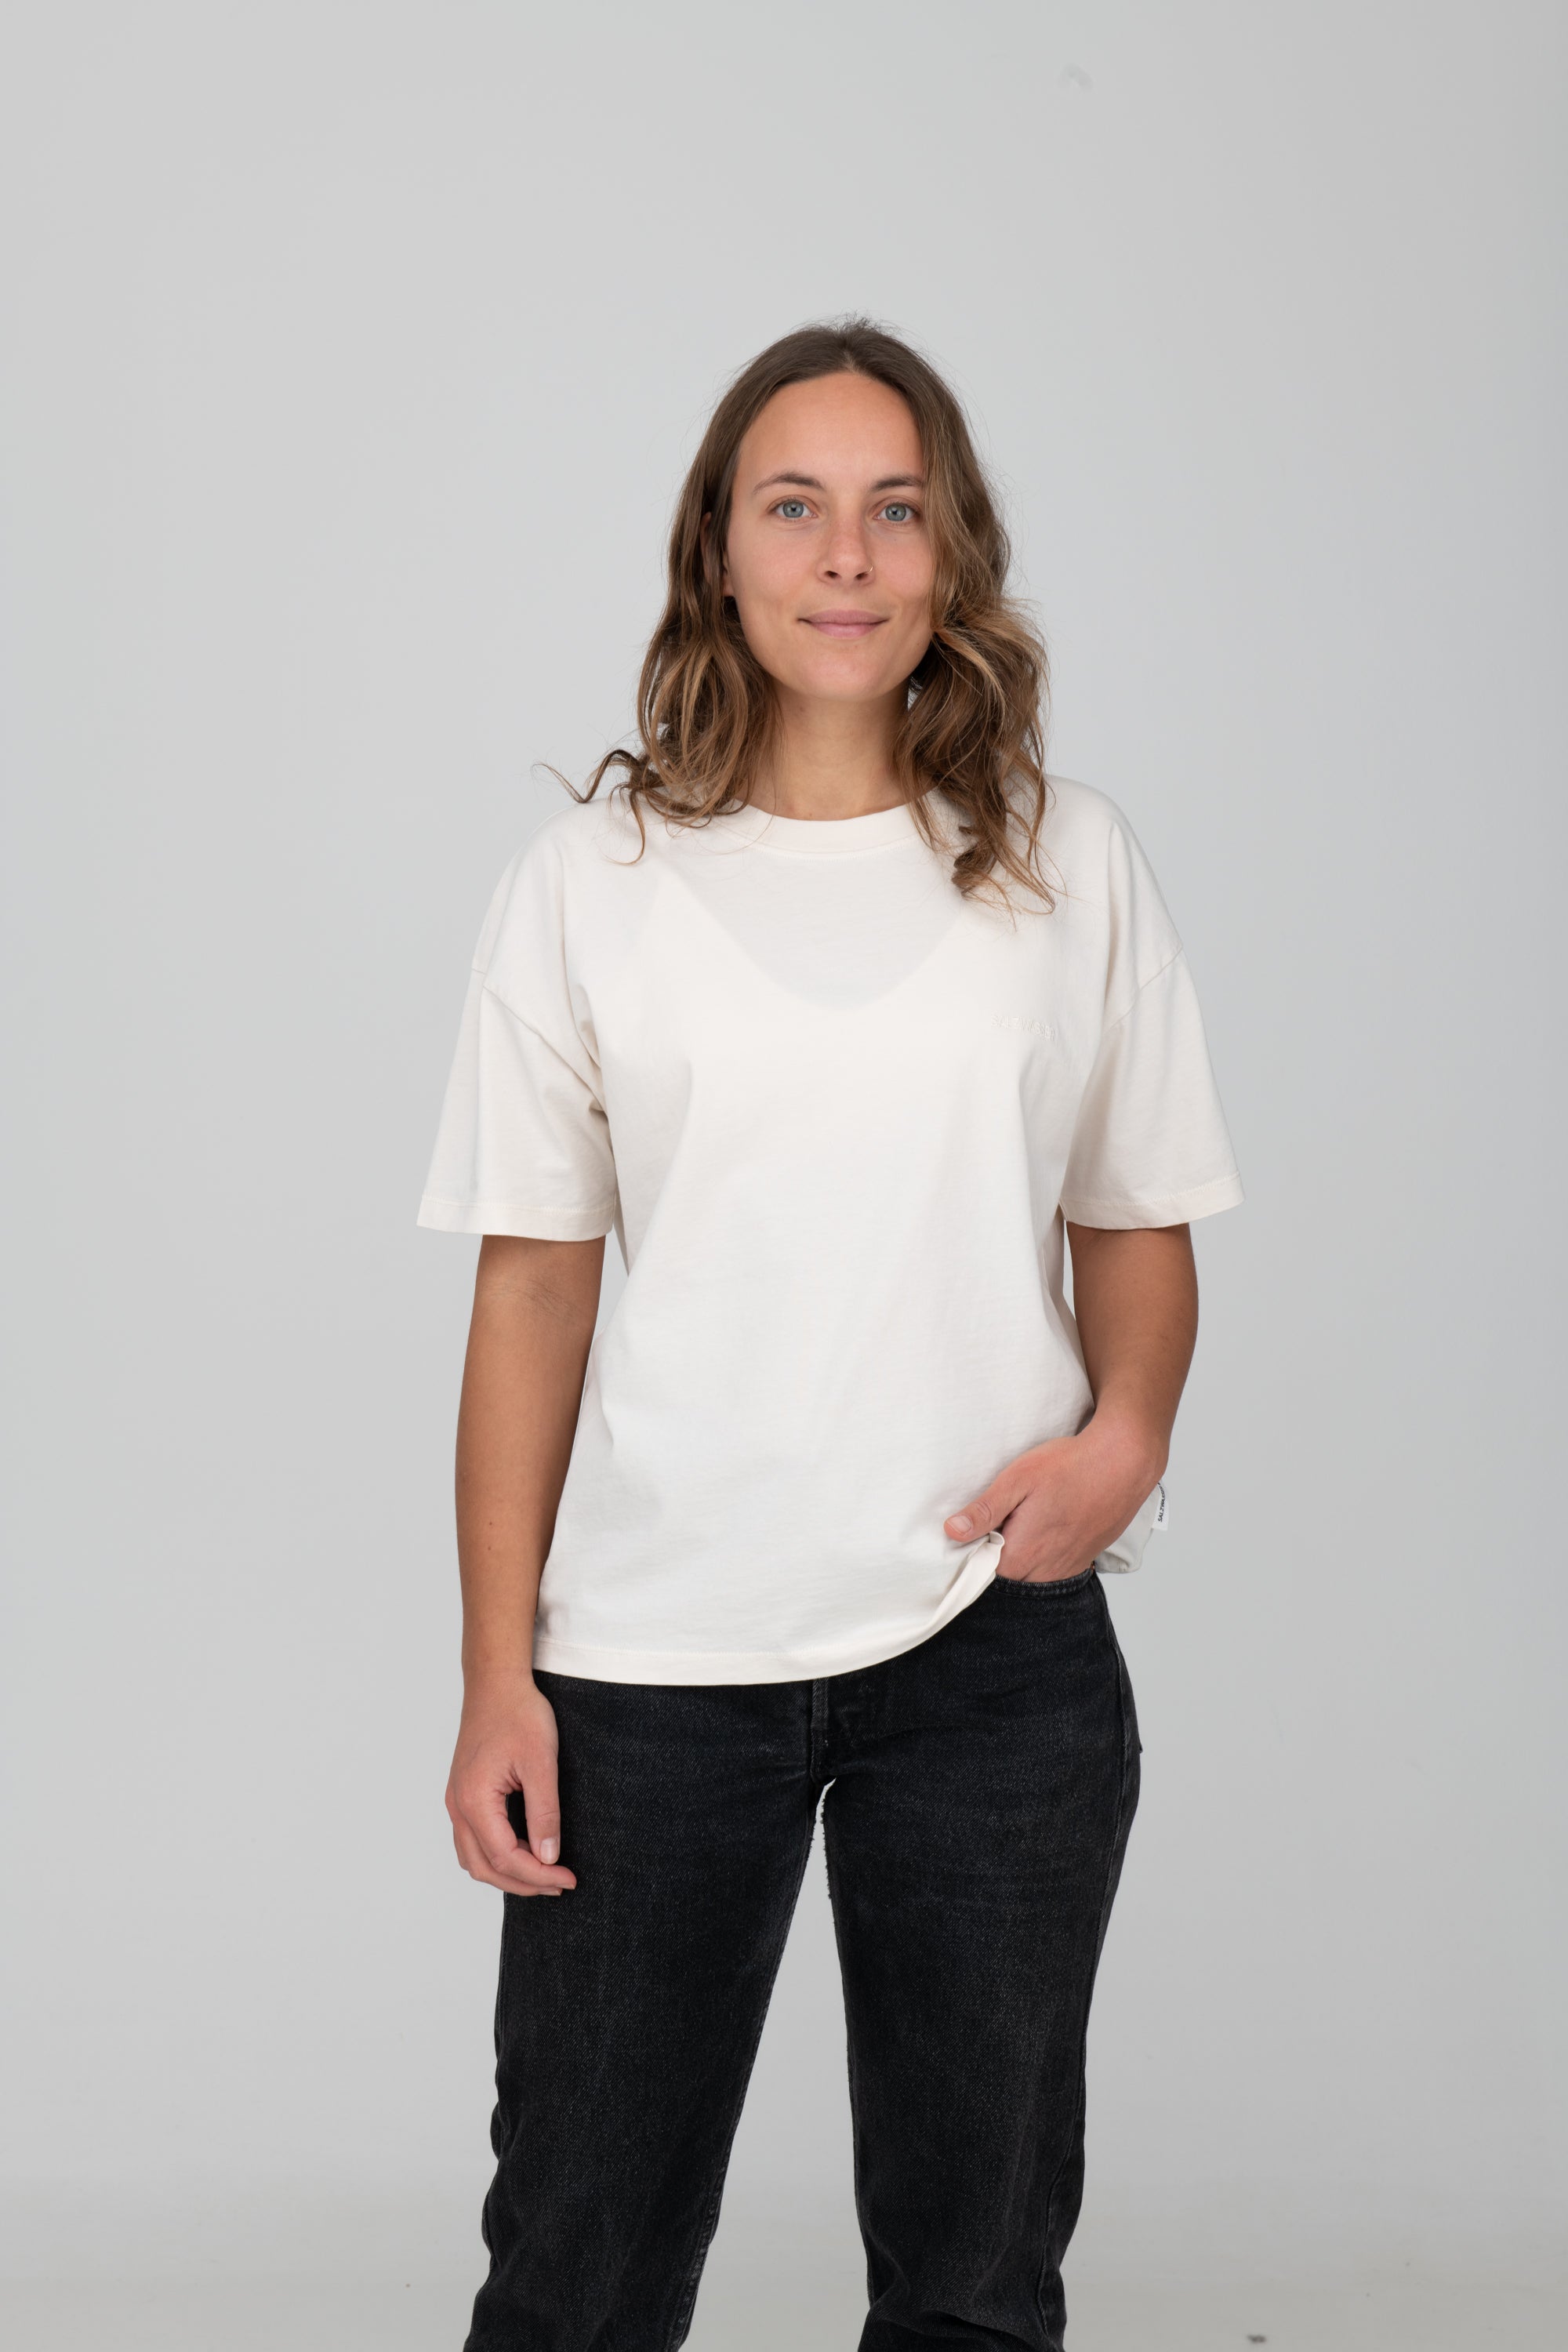 auffallendes T-Shirt in Off-White bei SALZWASSER zu kaufen